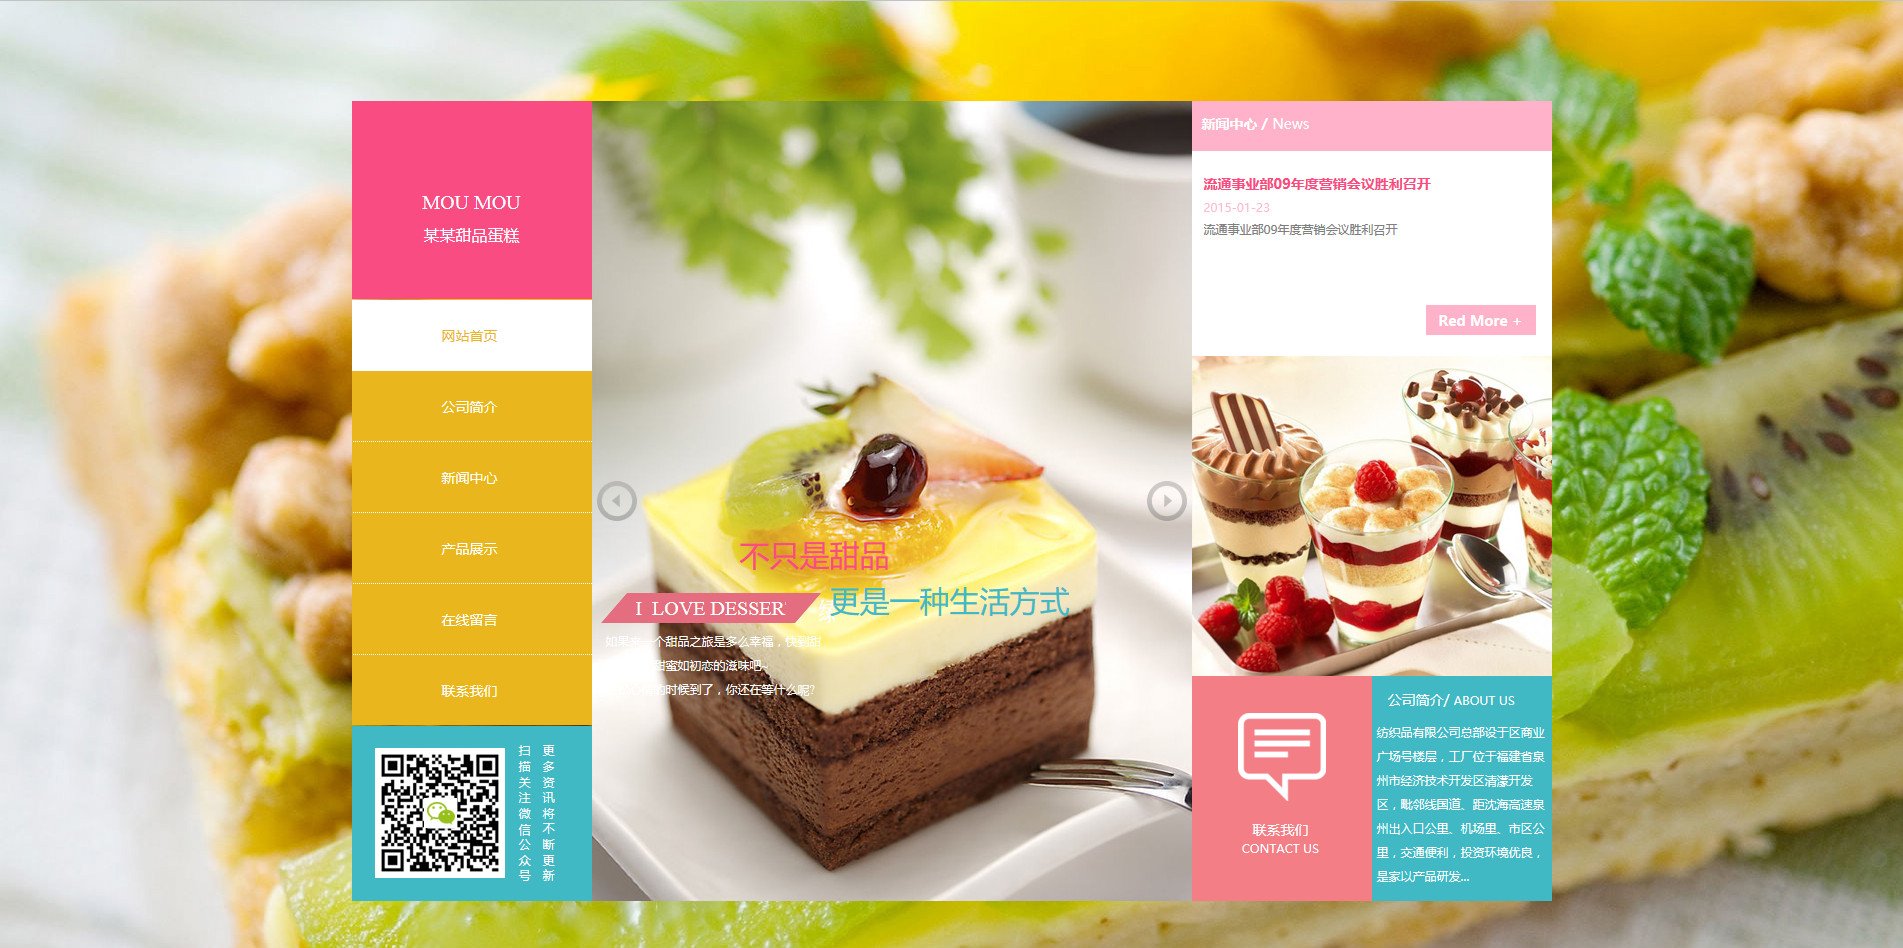 食品网站模板-food-171